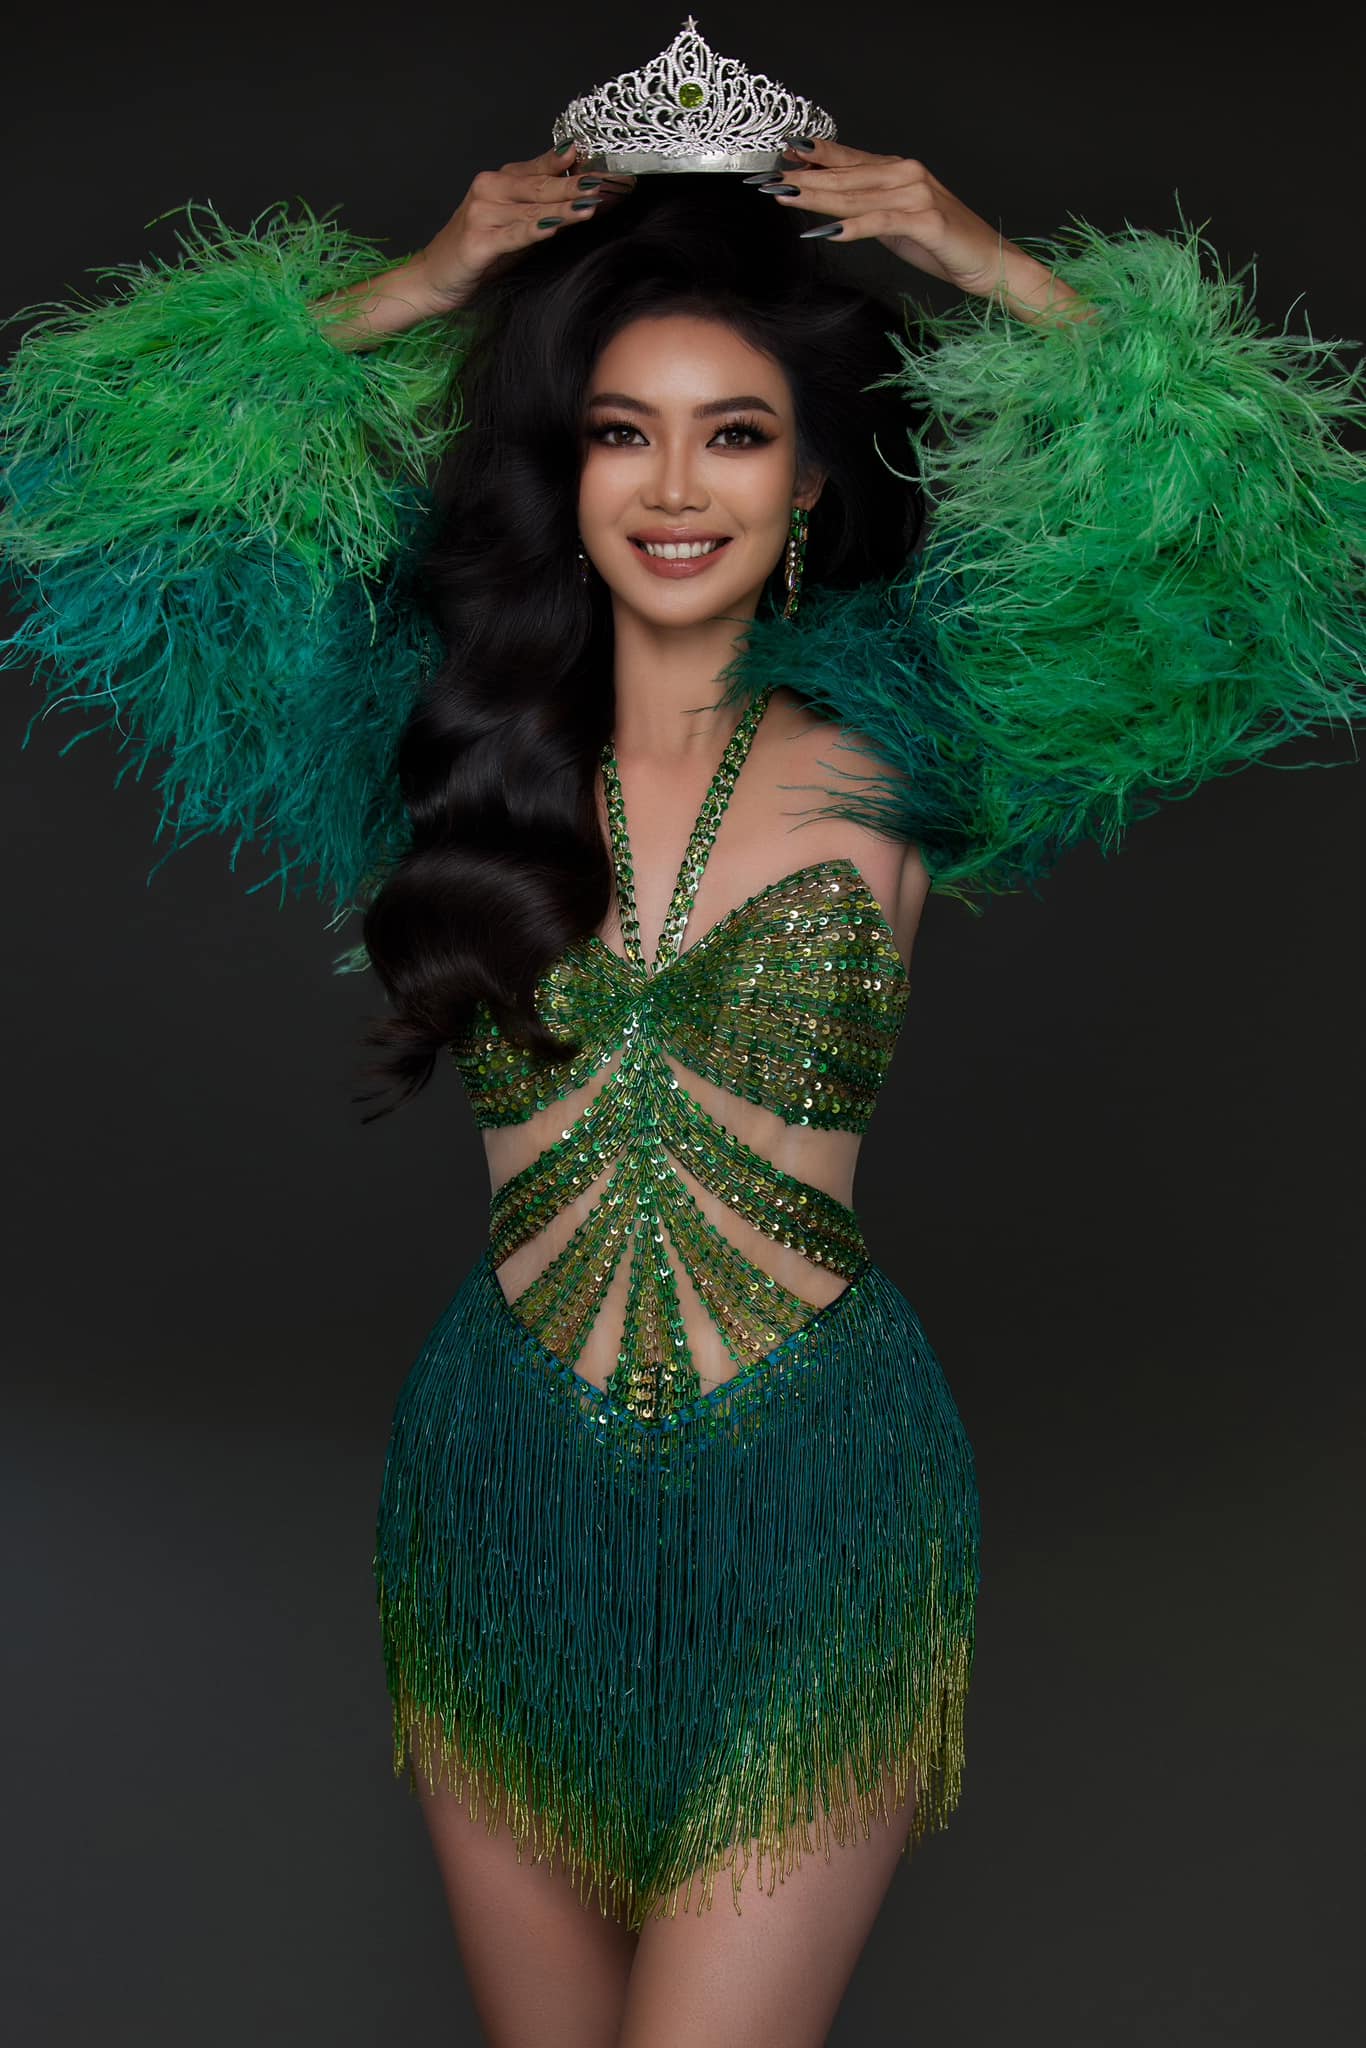 Họ Huỳnh, dòng họ có nhiều người đăng quang Hoa hậu Á hậu bậc nhất tại Việt Nam - ảnh 8